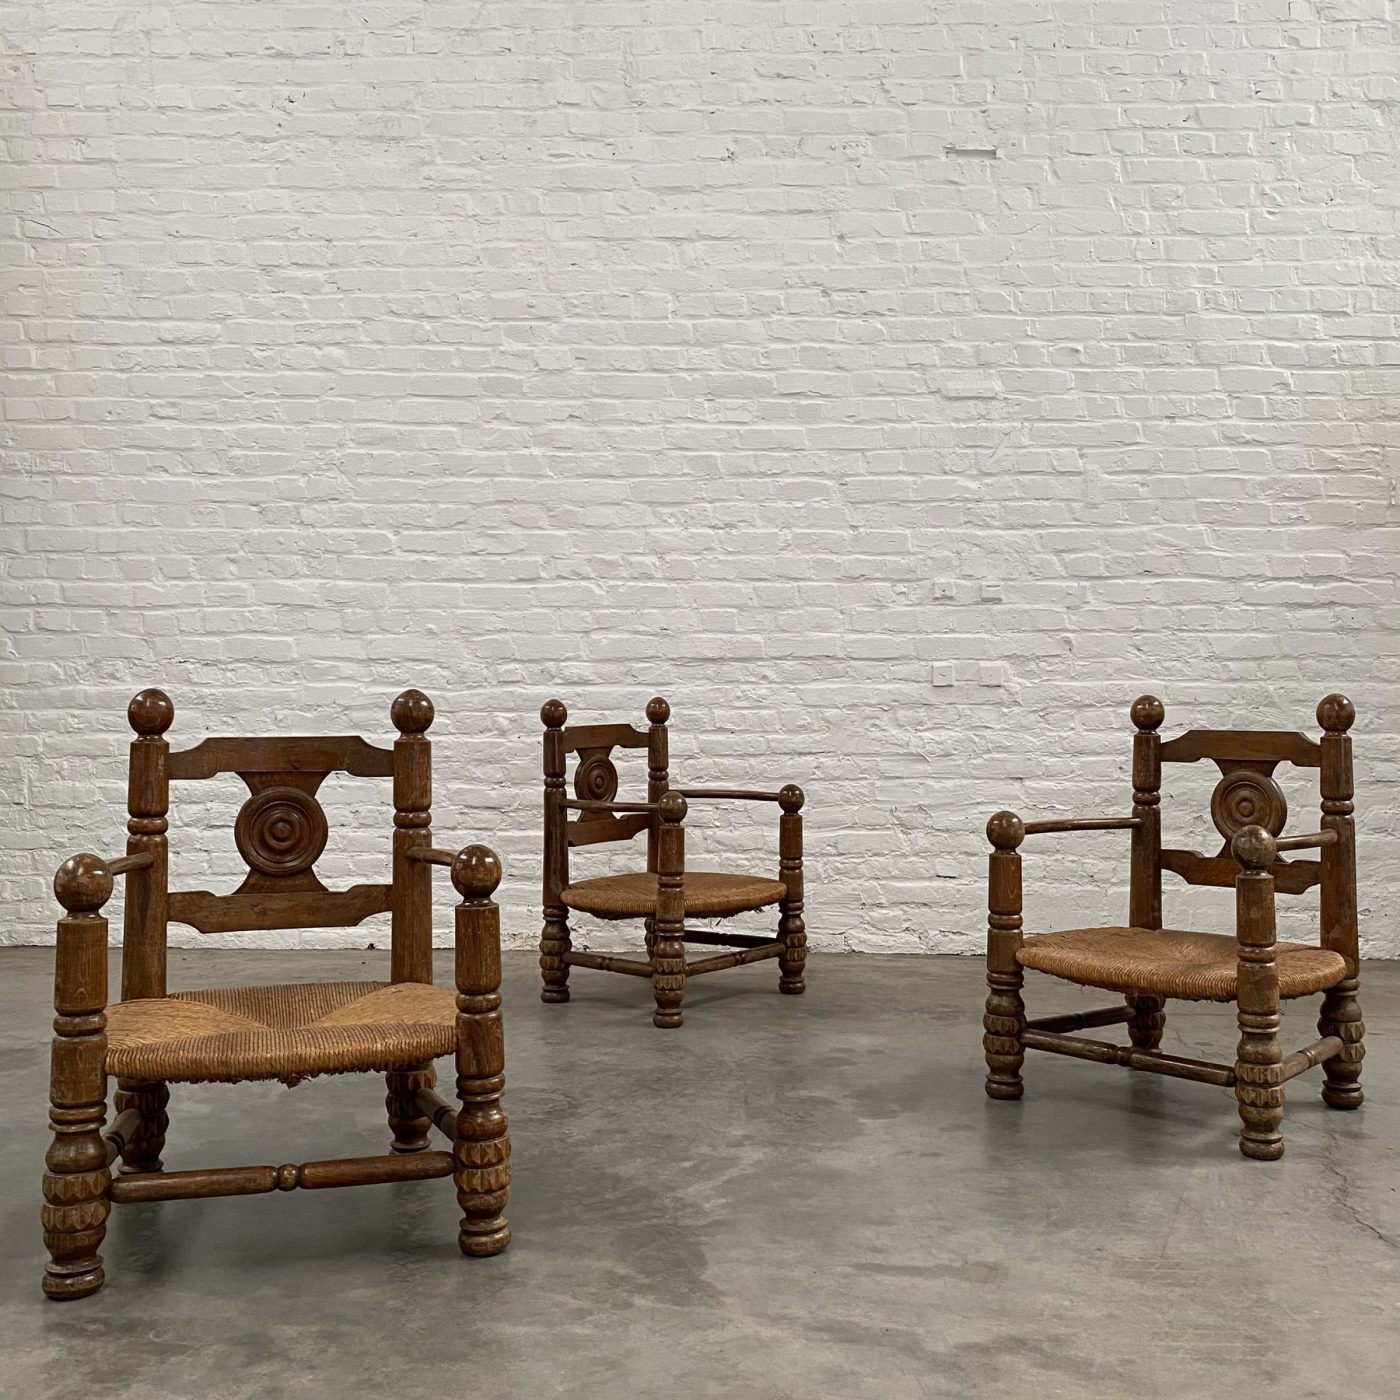 objet-vagabond-dudouyt-chairs0017